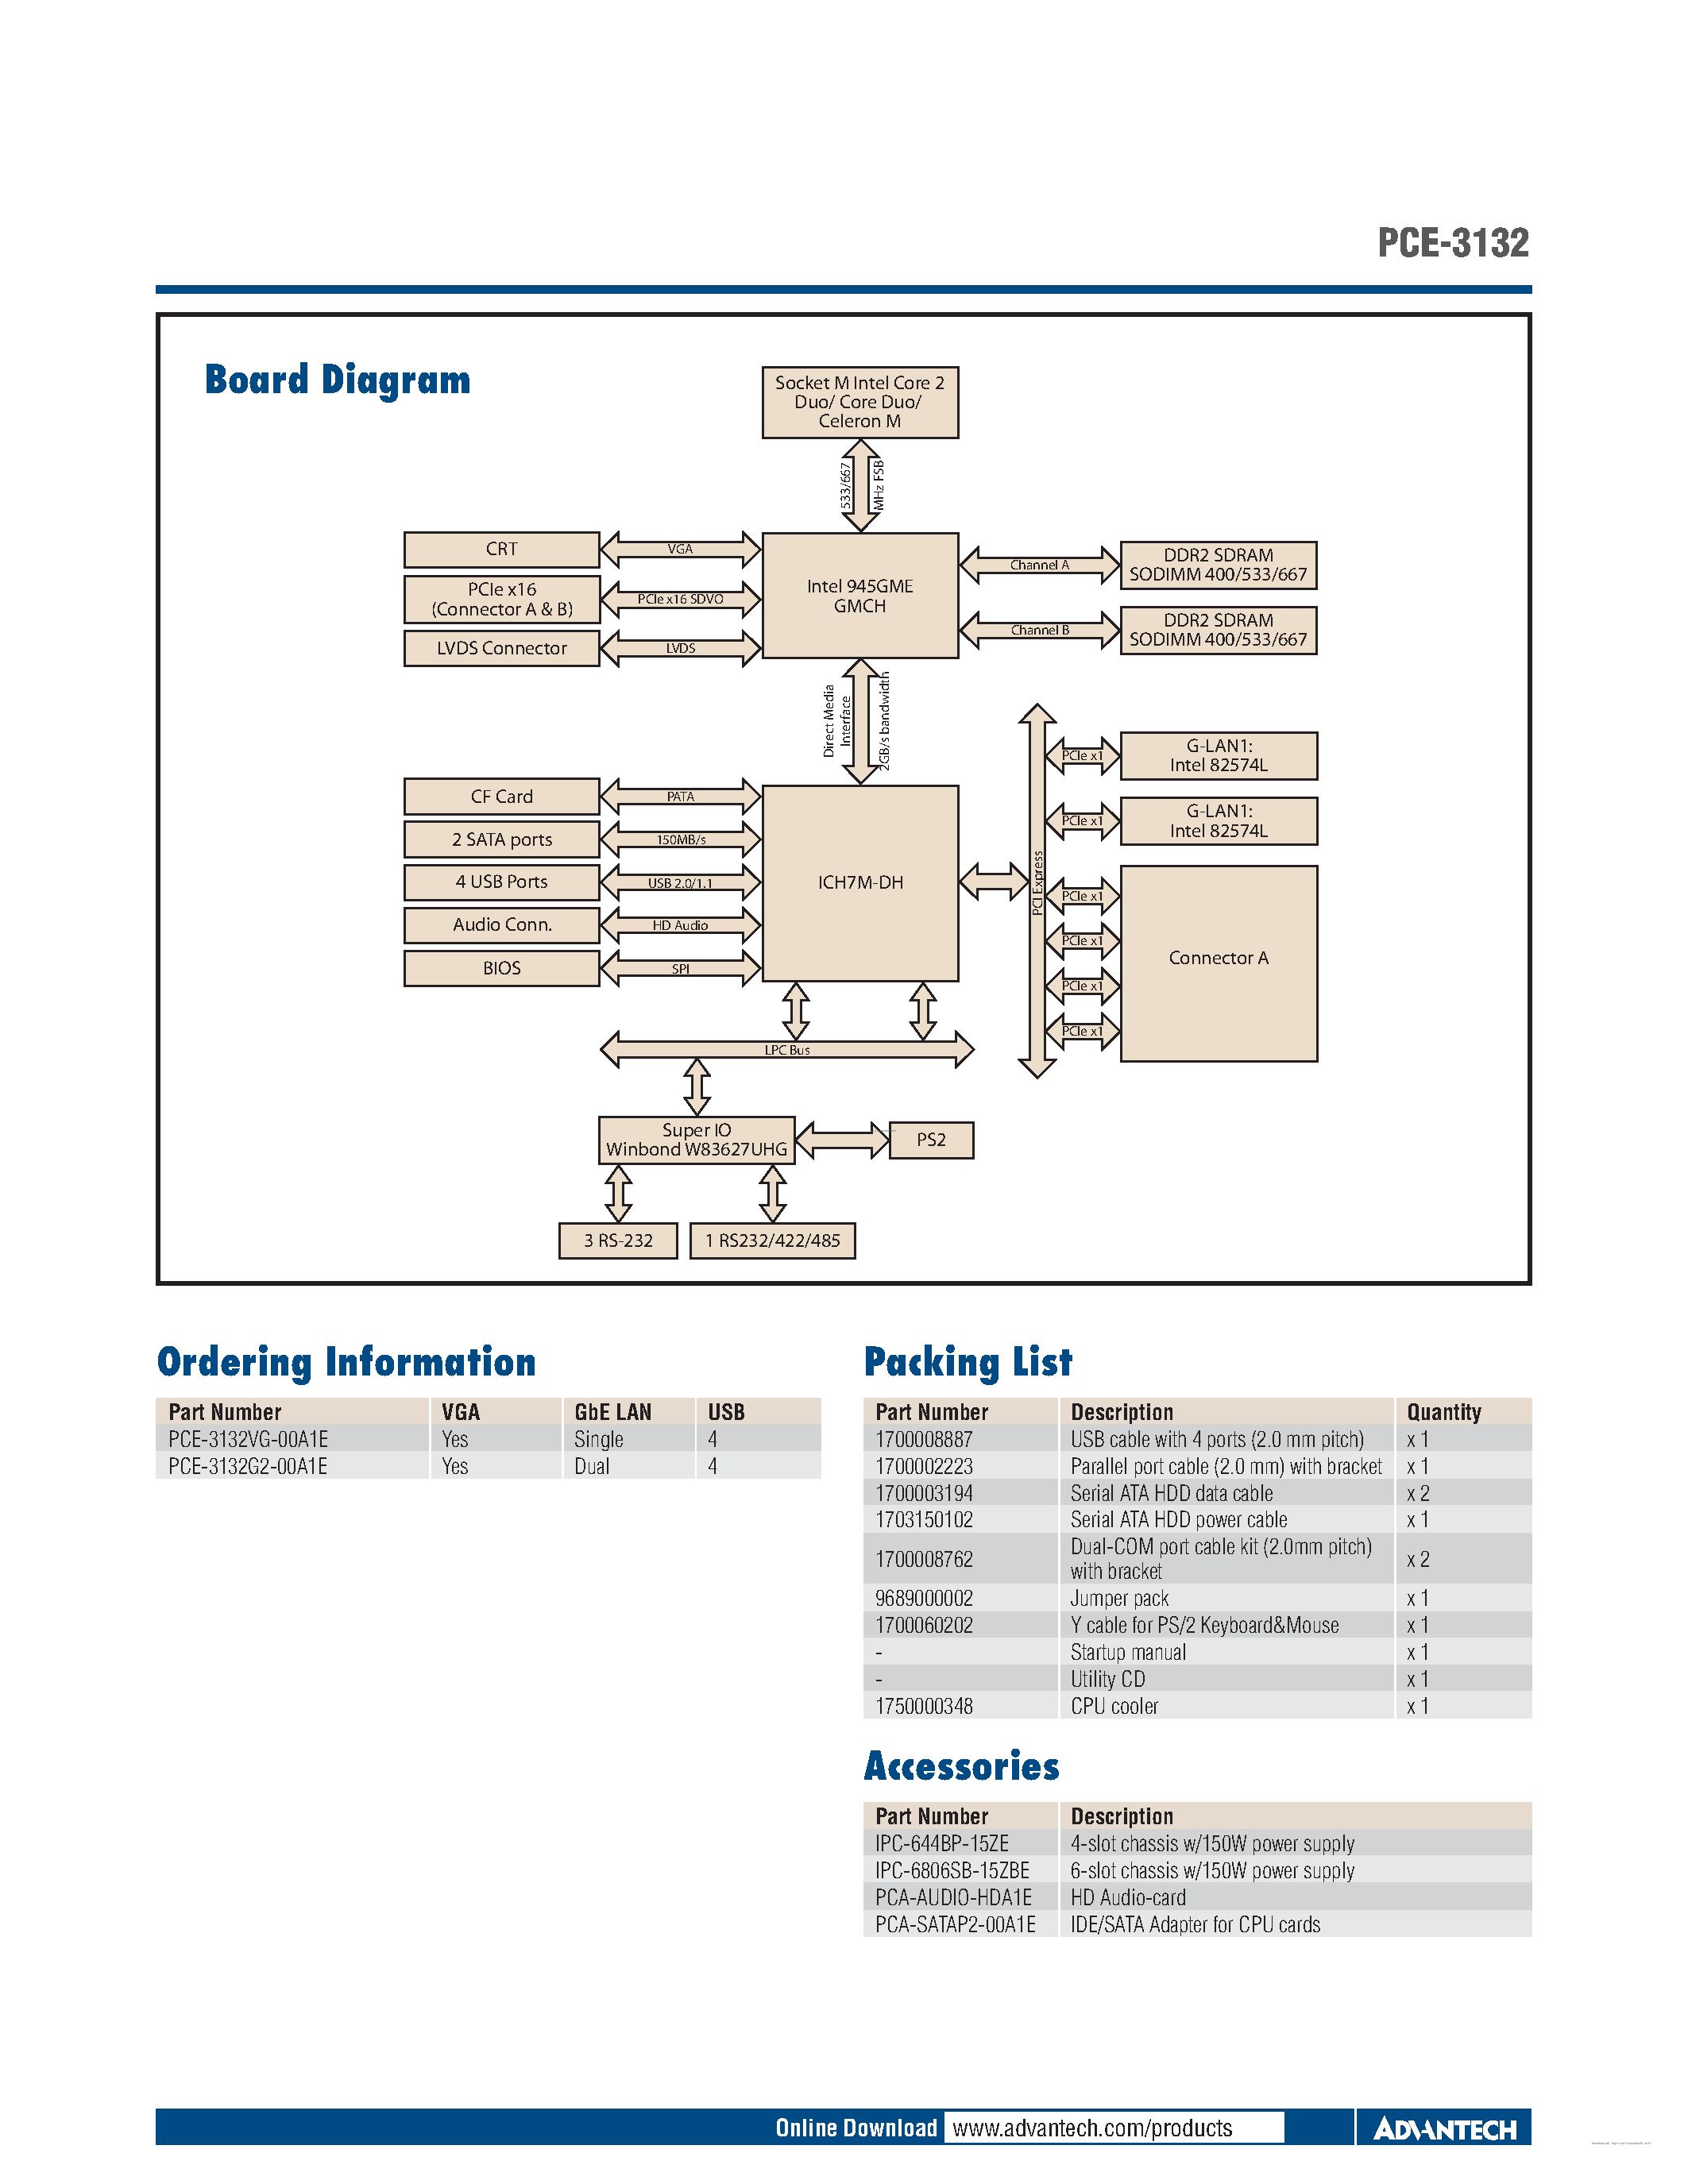 Datasheet PCE-3132 - Socket M Intel Core page 2